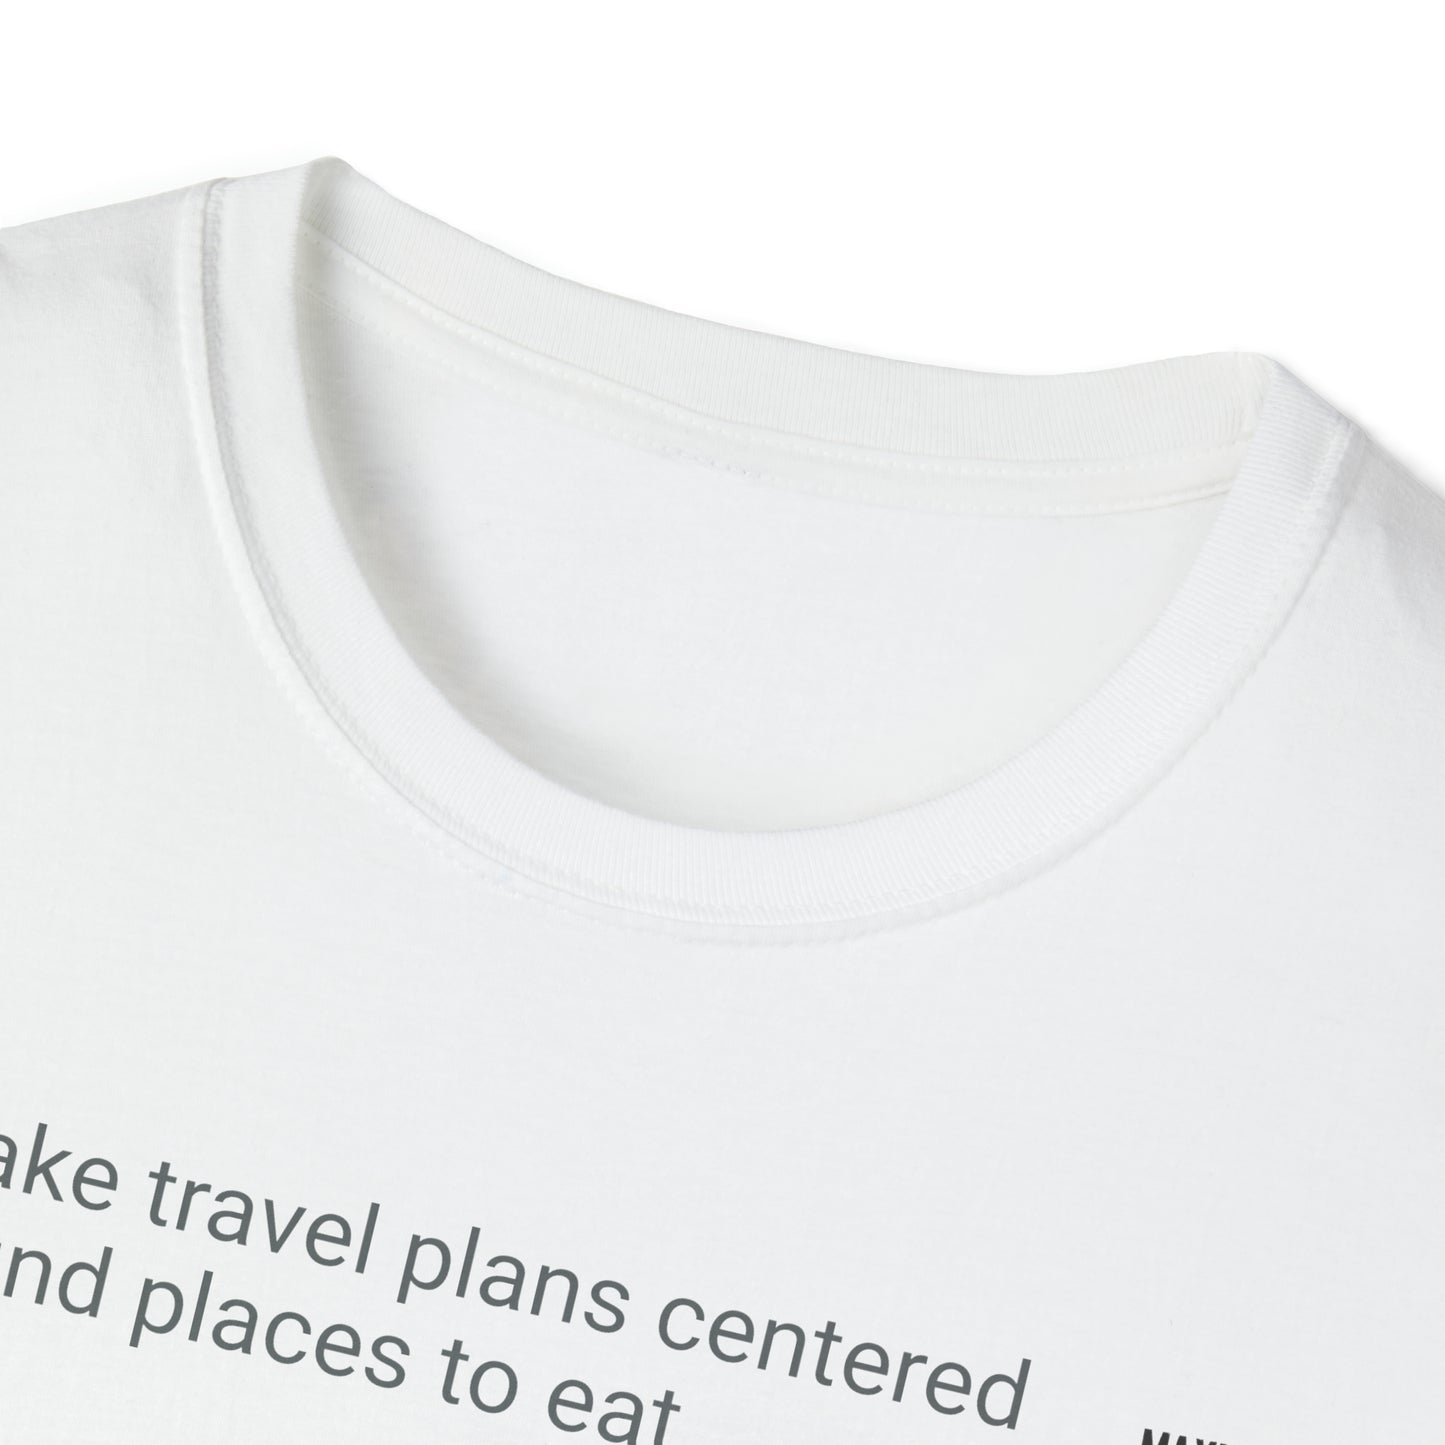 I make travel plans Unisex Softstyle T-Shirt